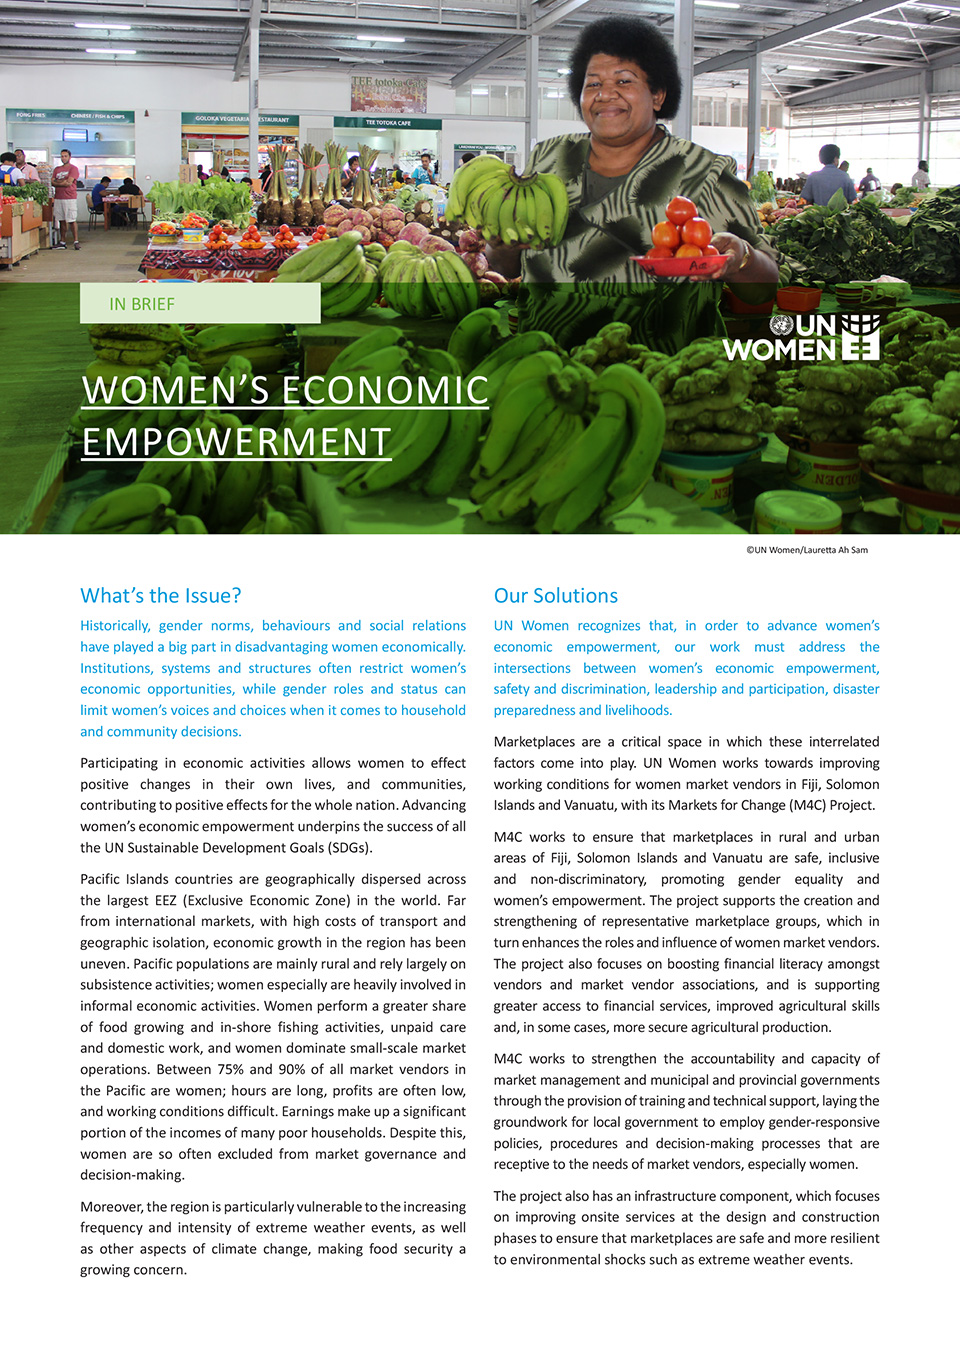 Women’s Economic Empowerment